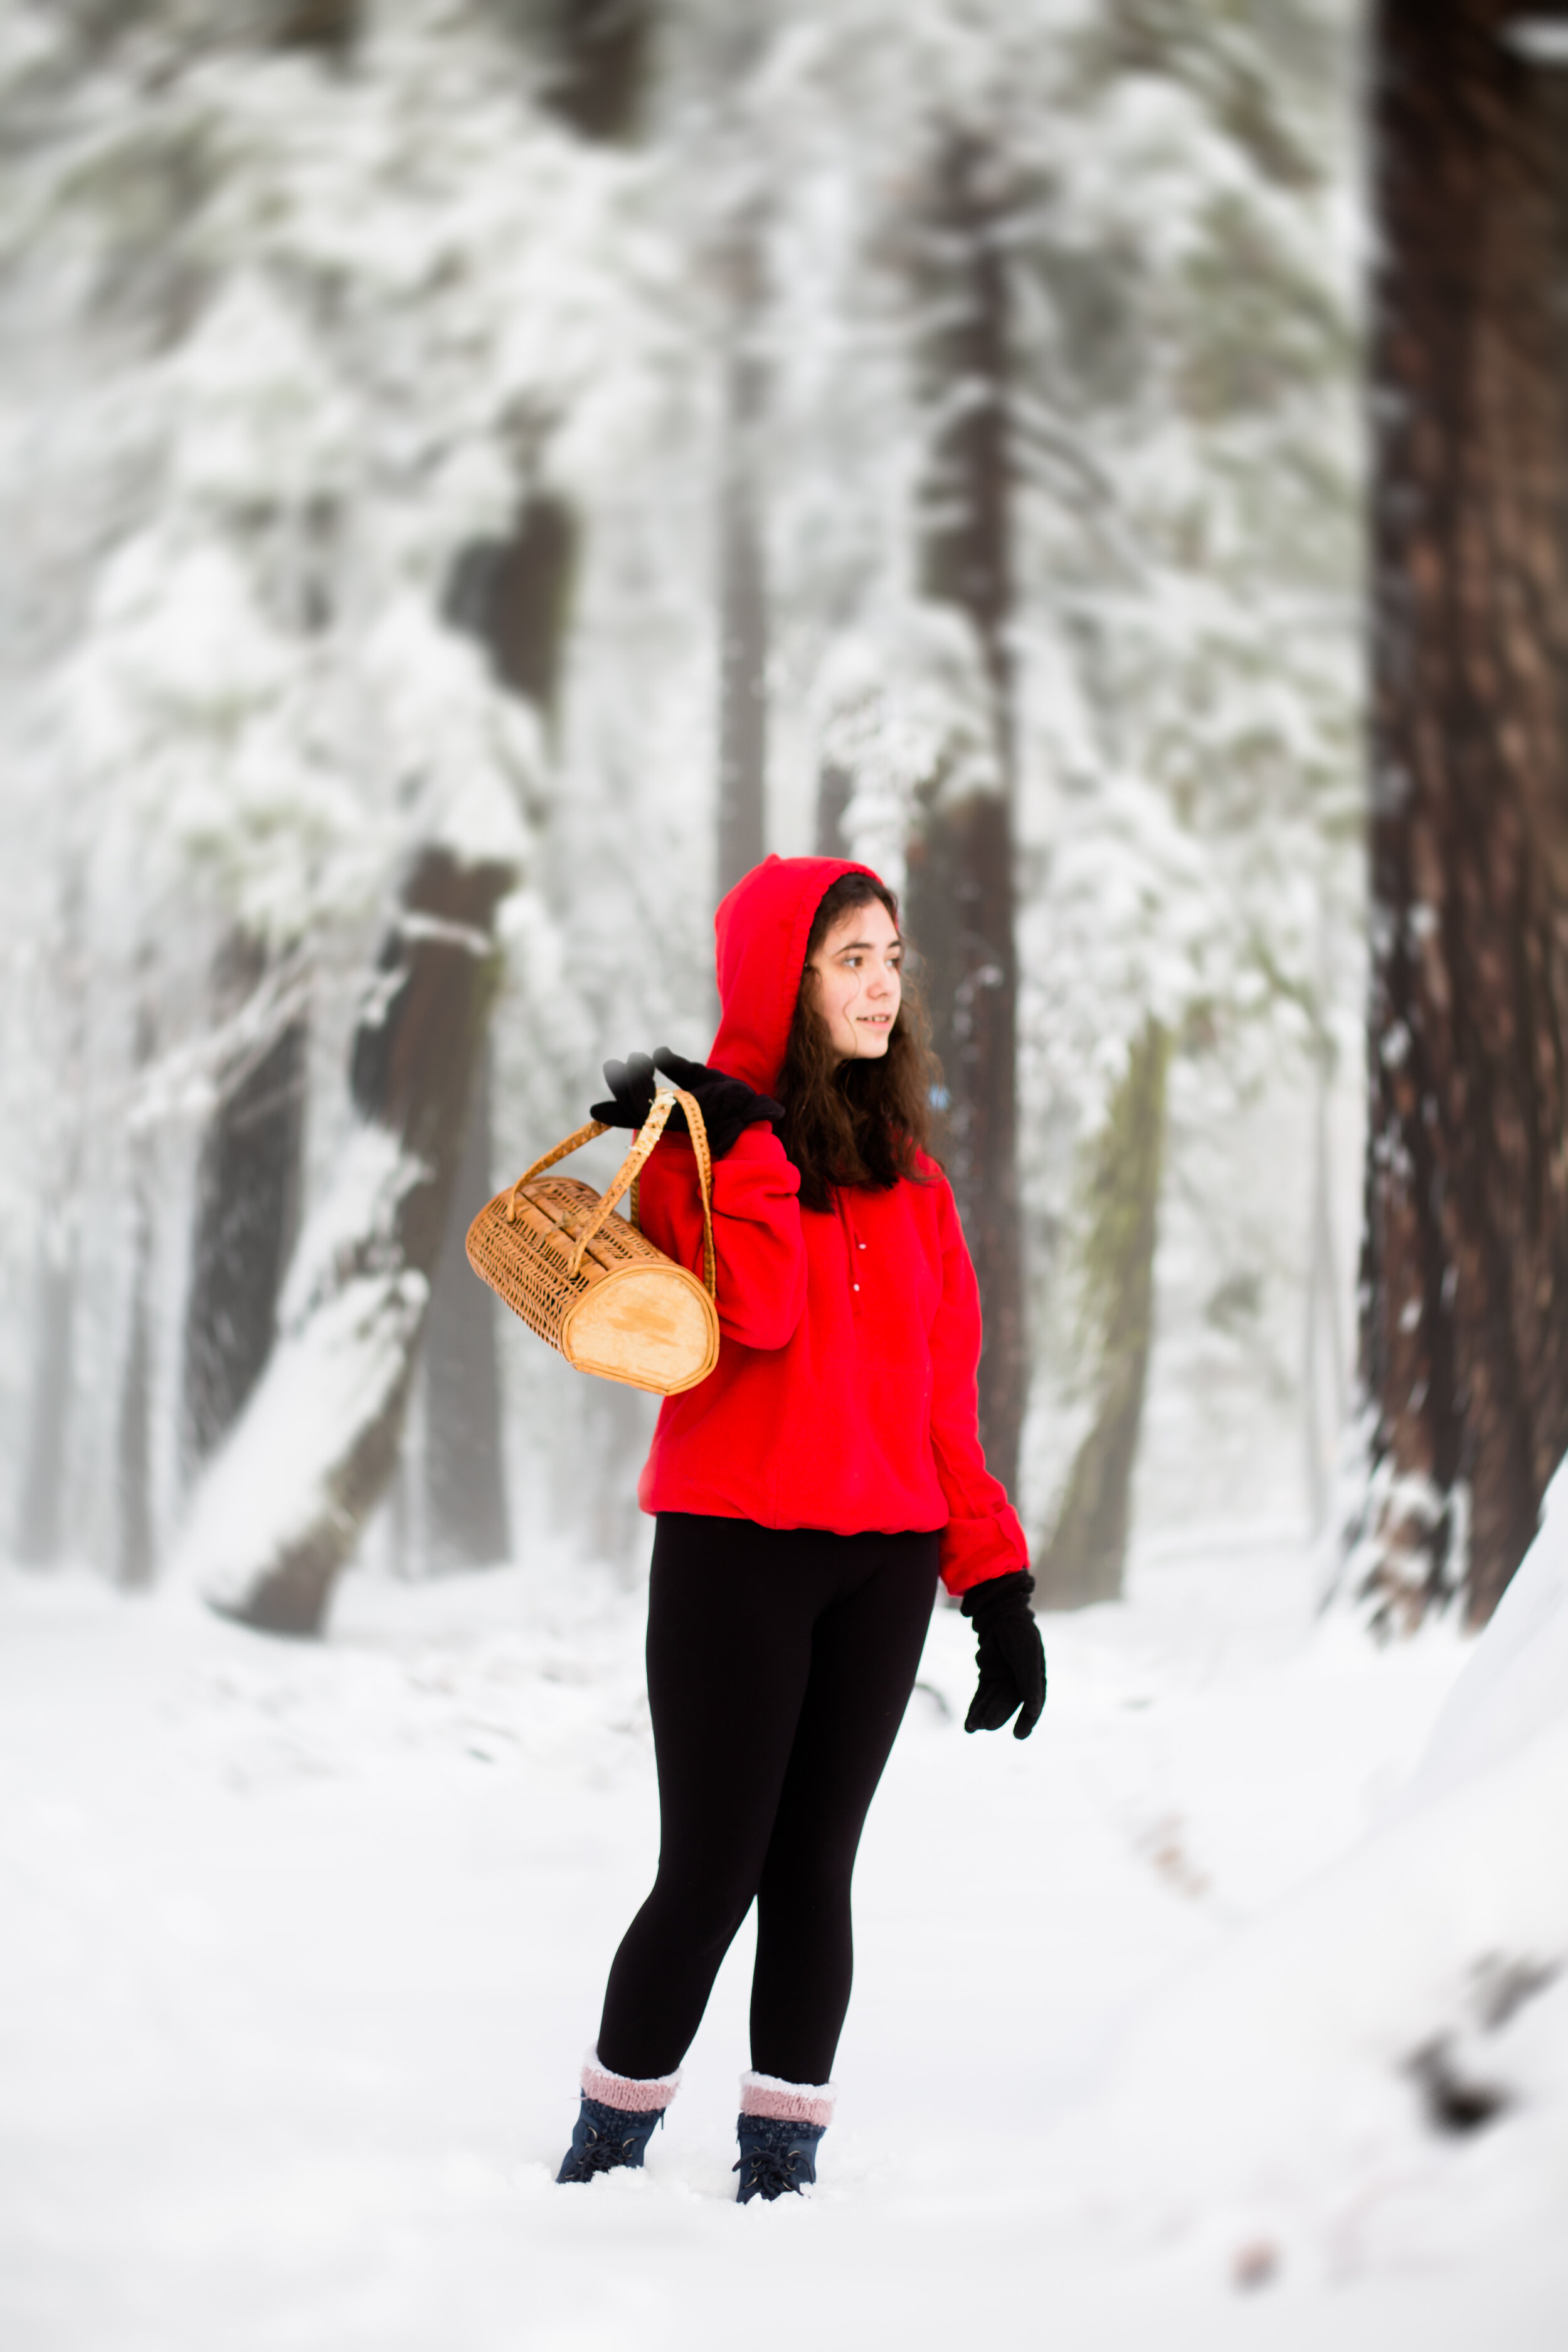 Red Riding Hood with Anika Vodicka | Photo by Lenka Vodicka of Lenkaland Photography